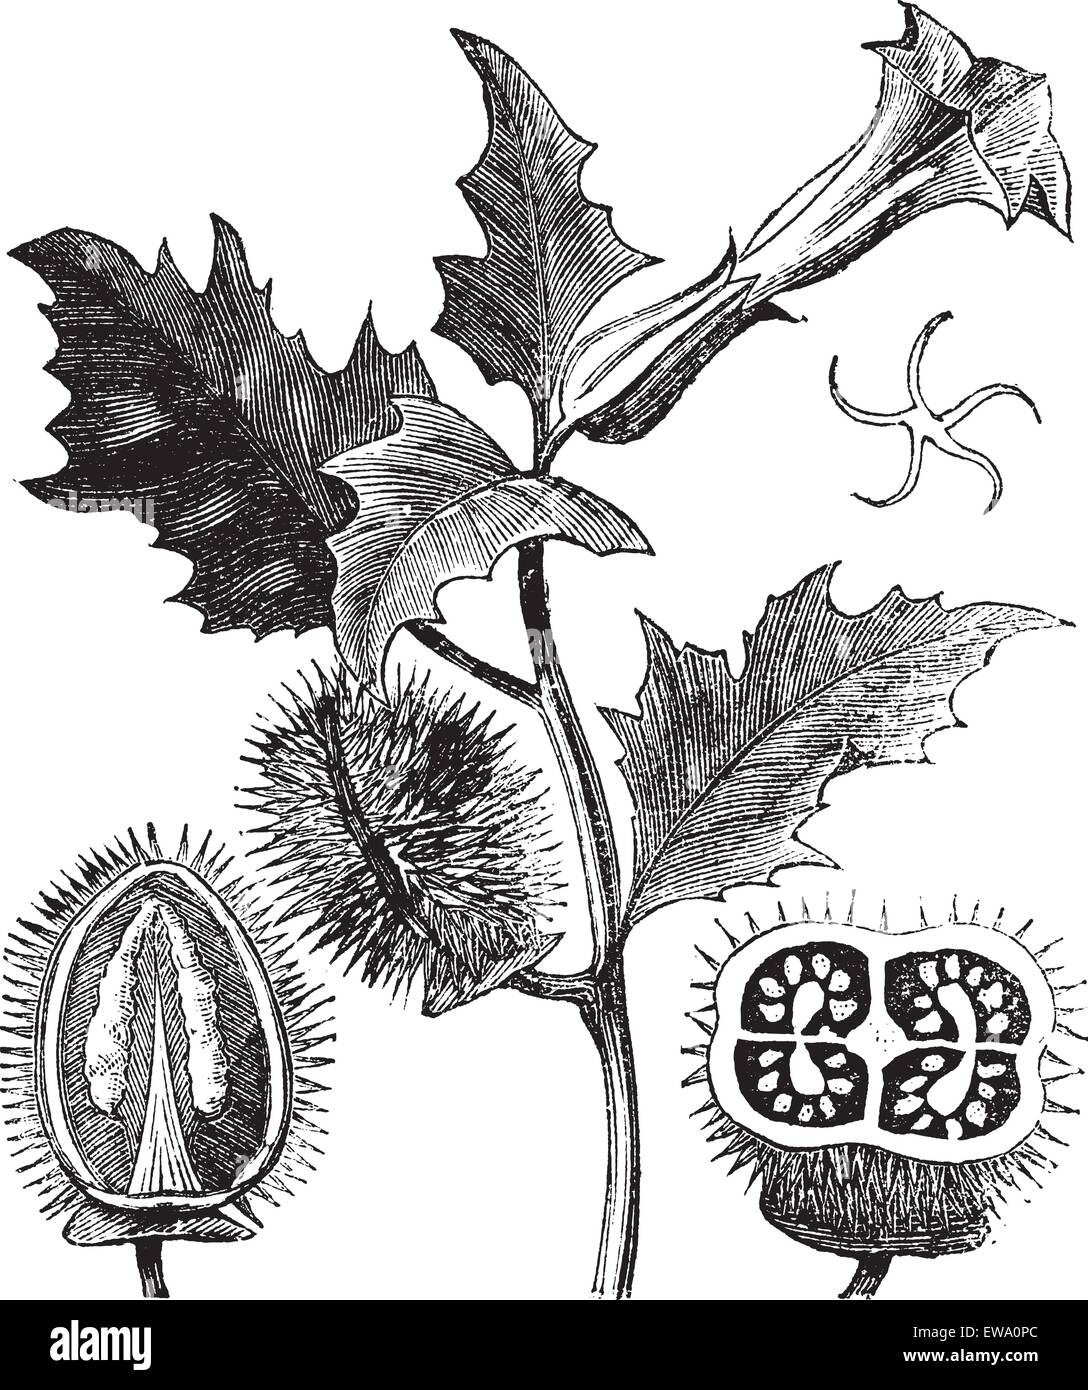 Thorn Apple oder jimson Weed oder Datura stramonium, vintage Gravur. Alte eingraviertem Muster von Thorn Apple Pflanze, Blumen (oben) und Samenkapseln (unten links und rechts). Stock Vektor